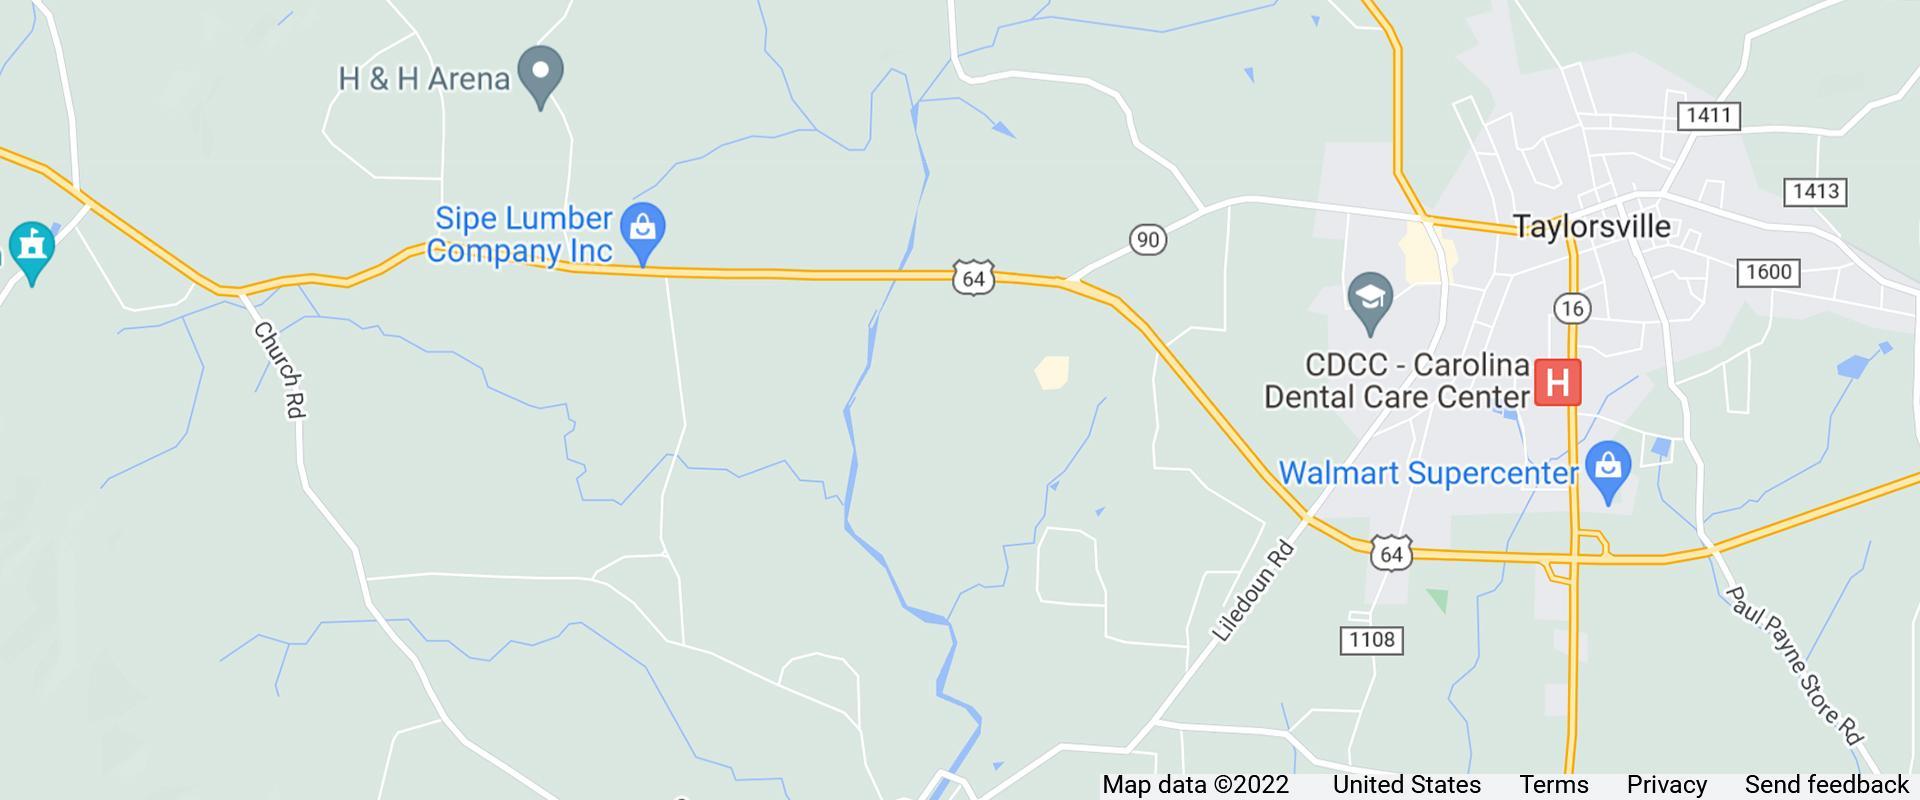 map of taylorsville north carolina